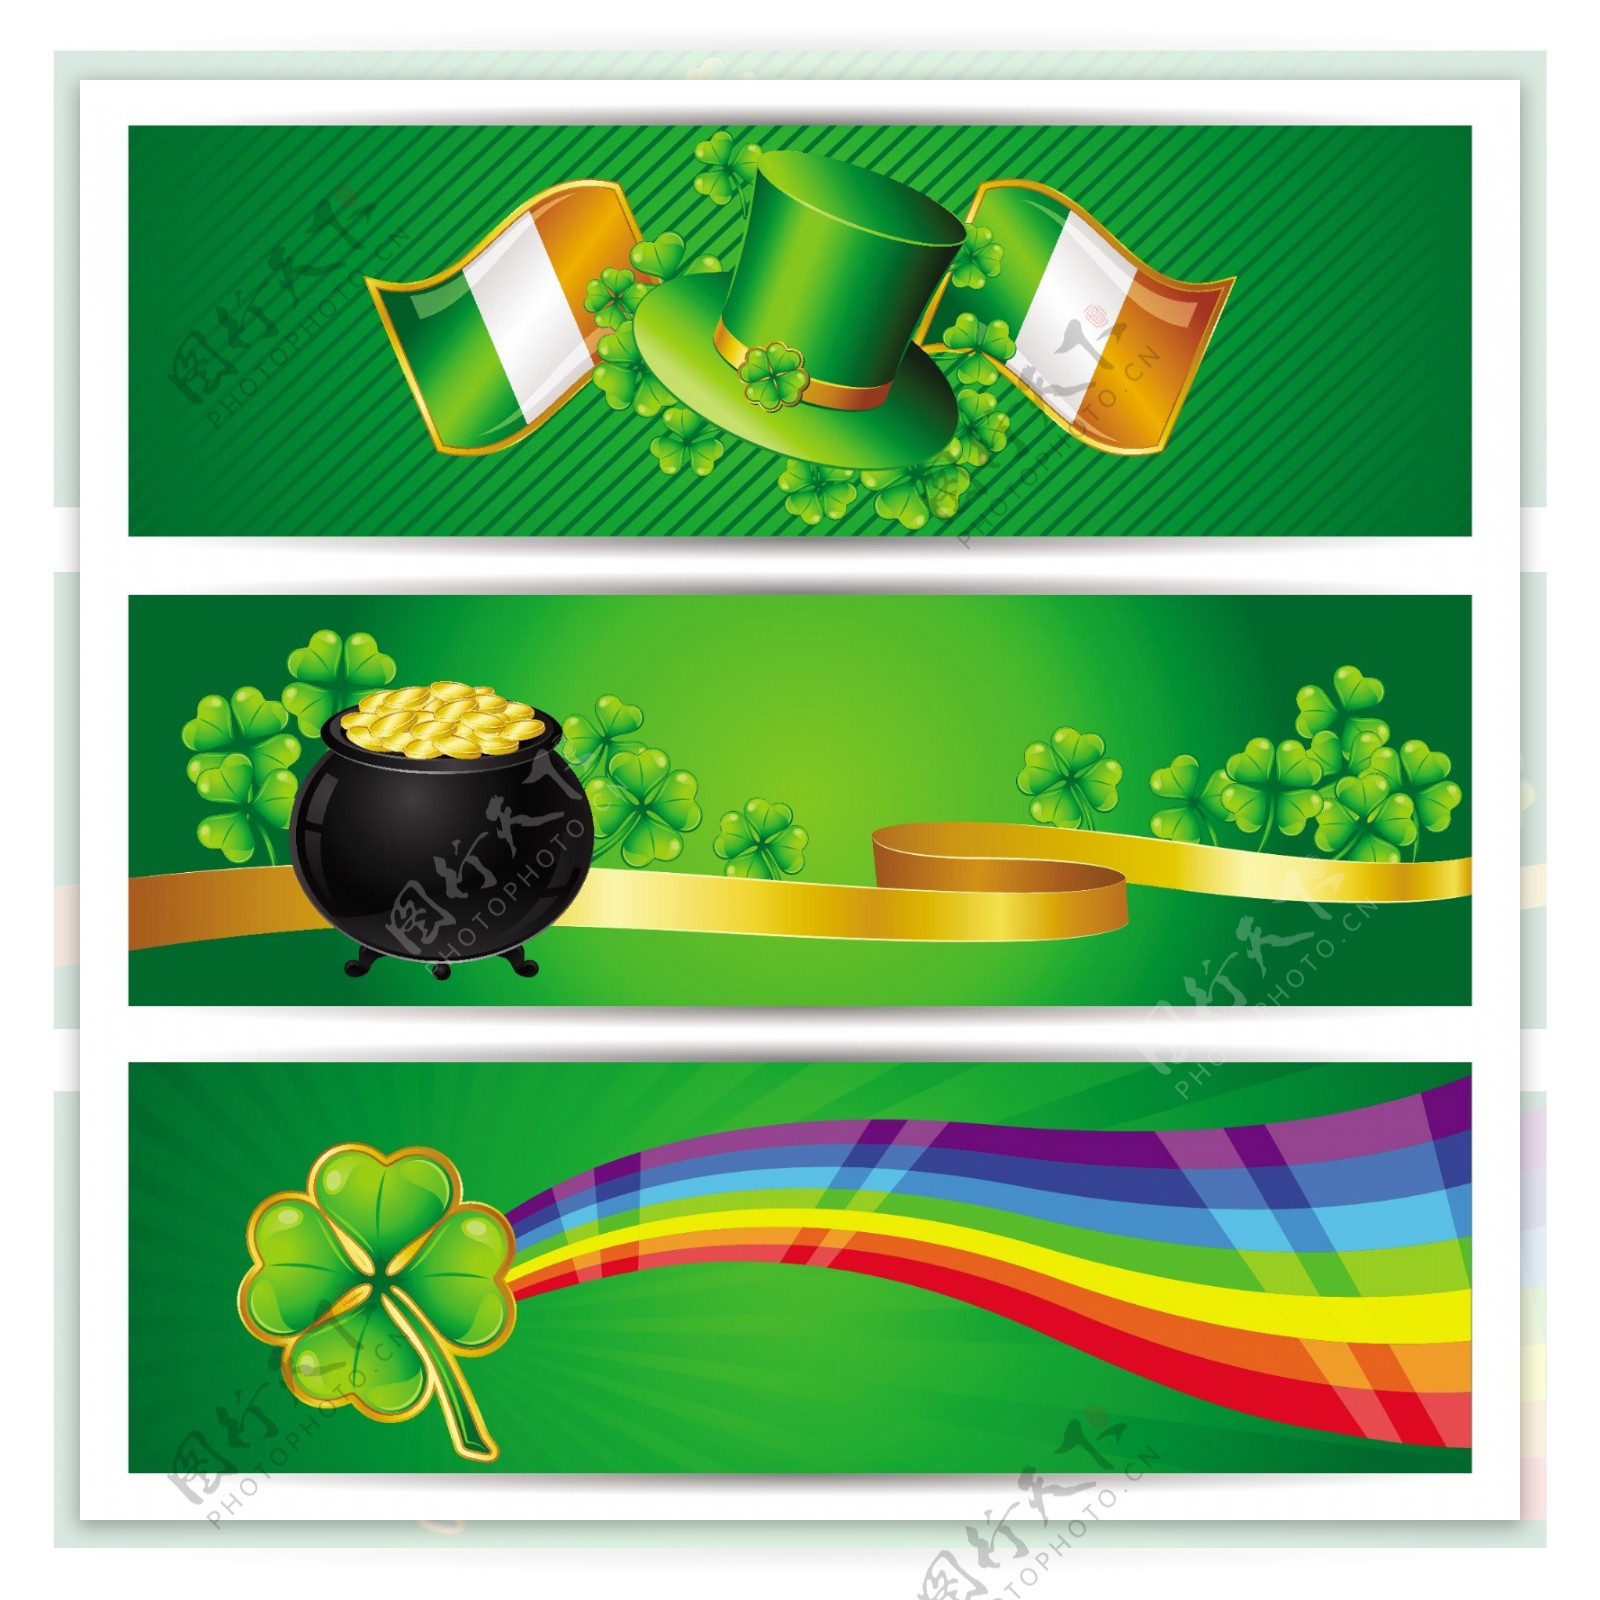 爱尔兰国旗与四叶草